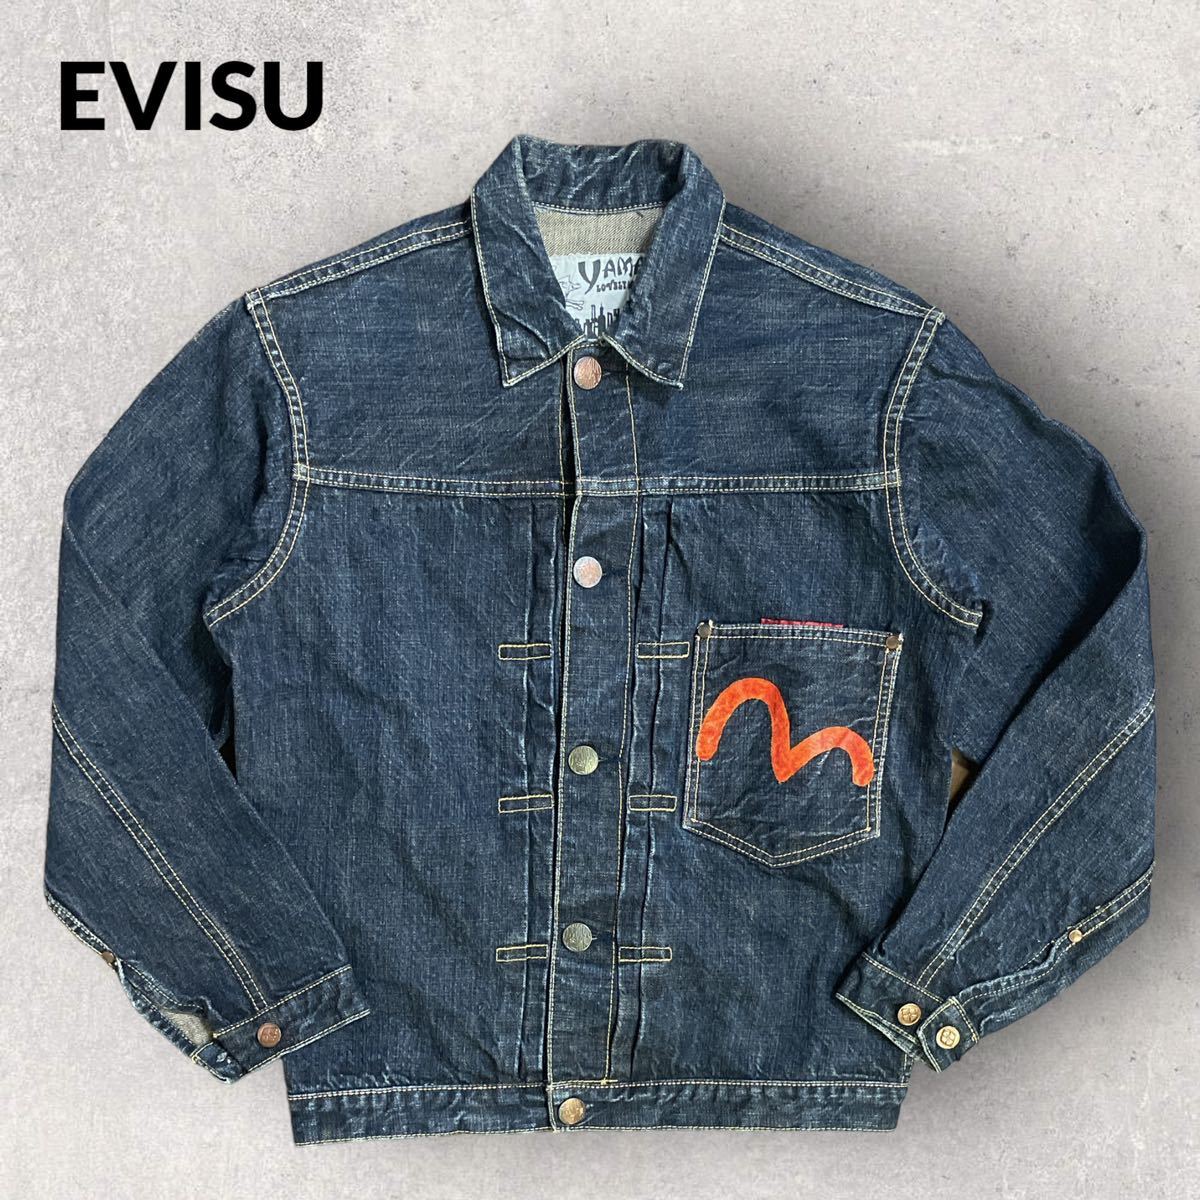 EVISU 1stモデル デニムジャケット カモメ 針シンチ フラップポケット-